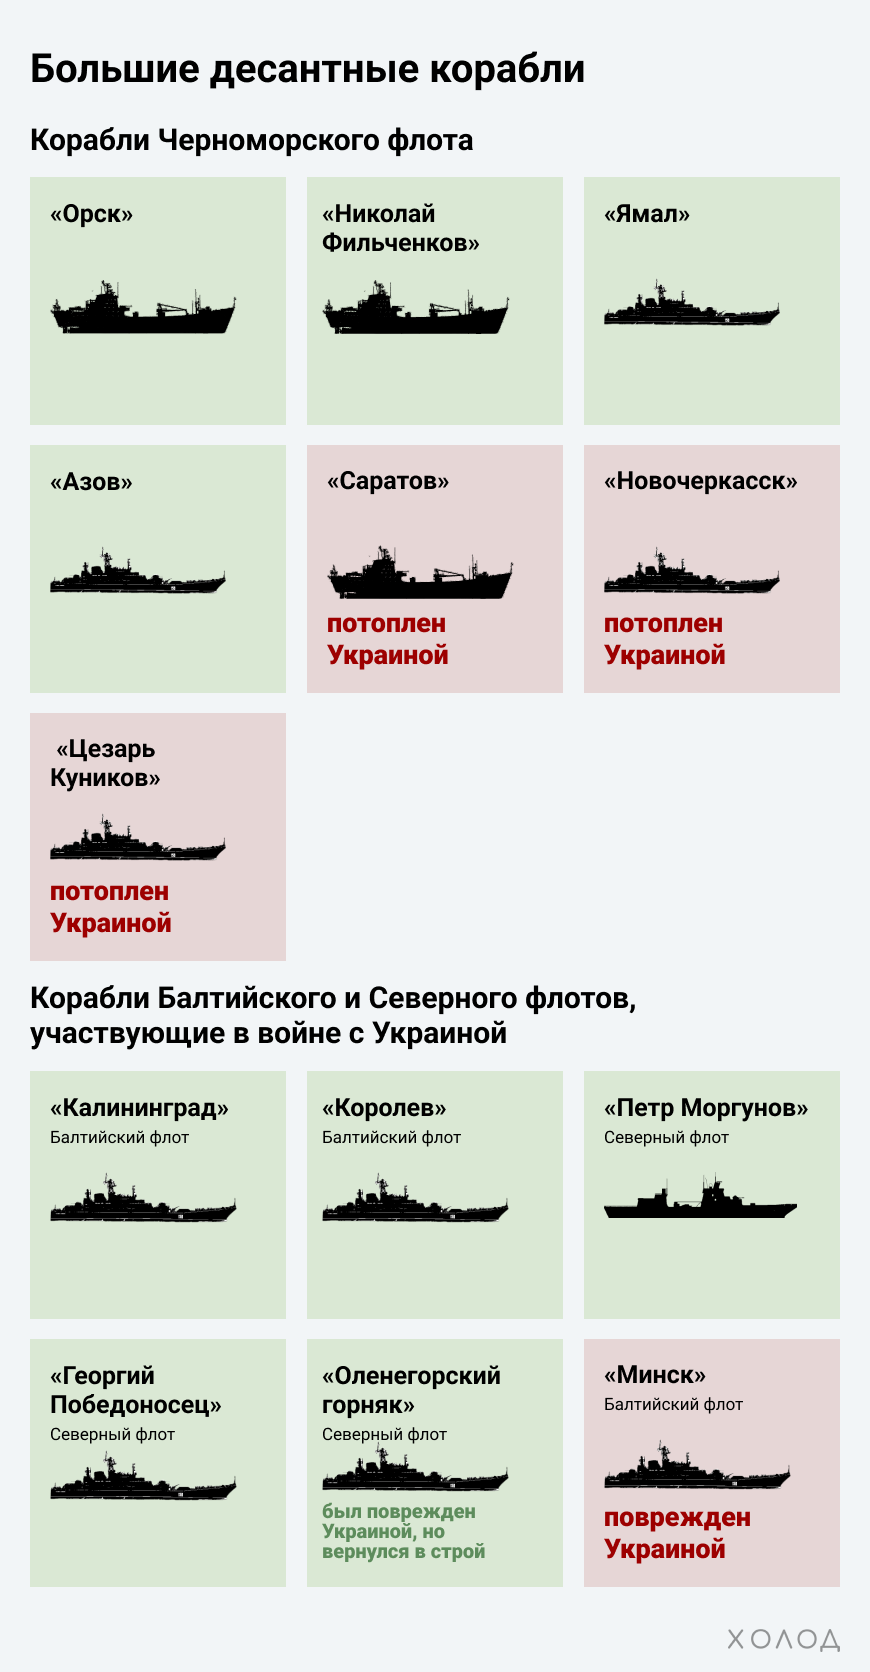 Большие десантные корабли Черноморского Флота